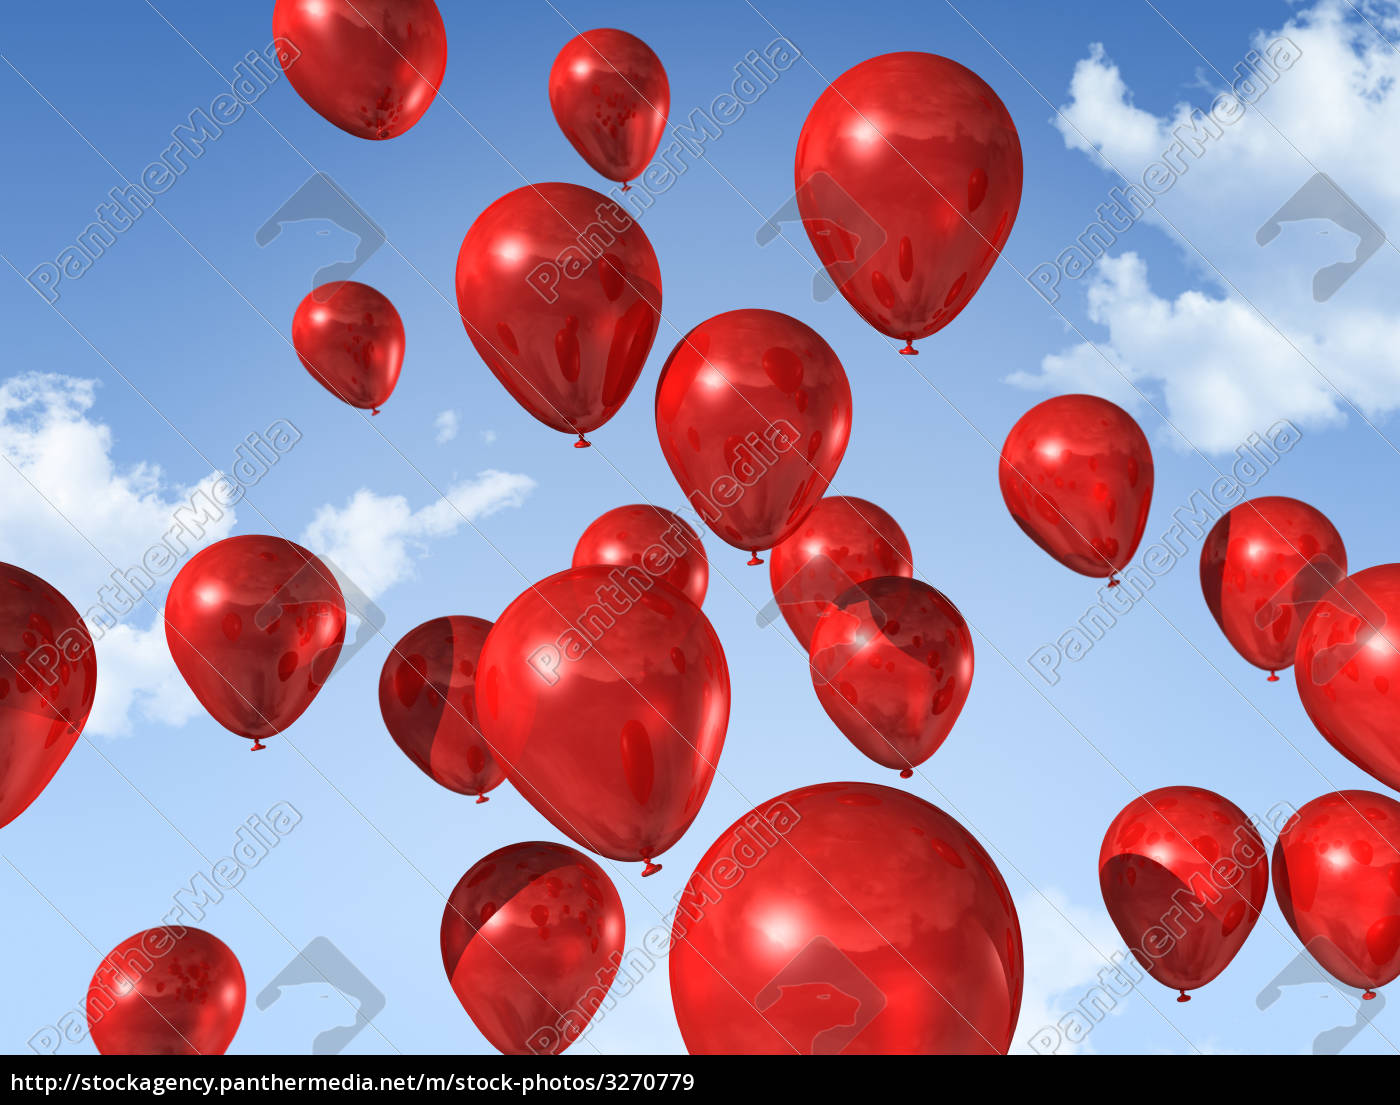 palloncini rossi su un cielo blu - Foto stock #3270779